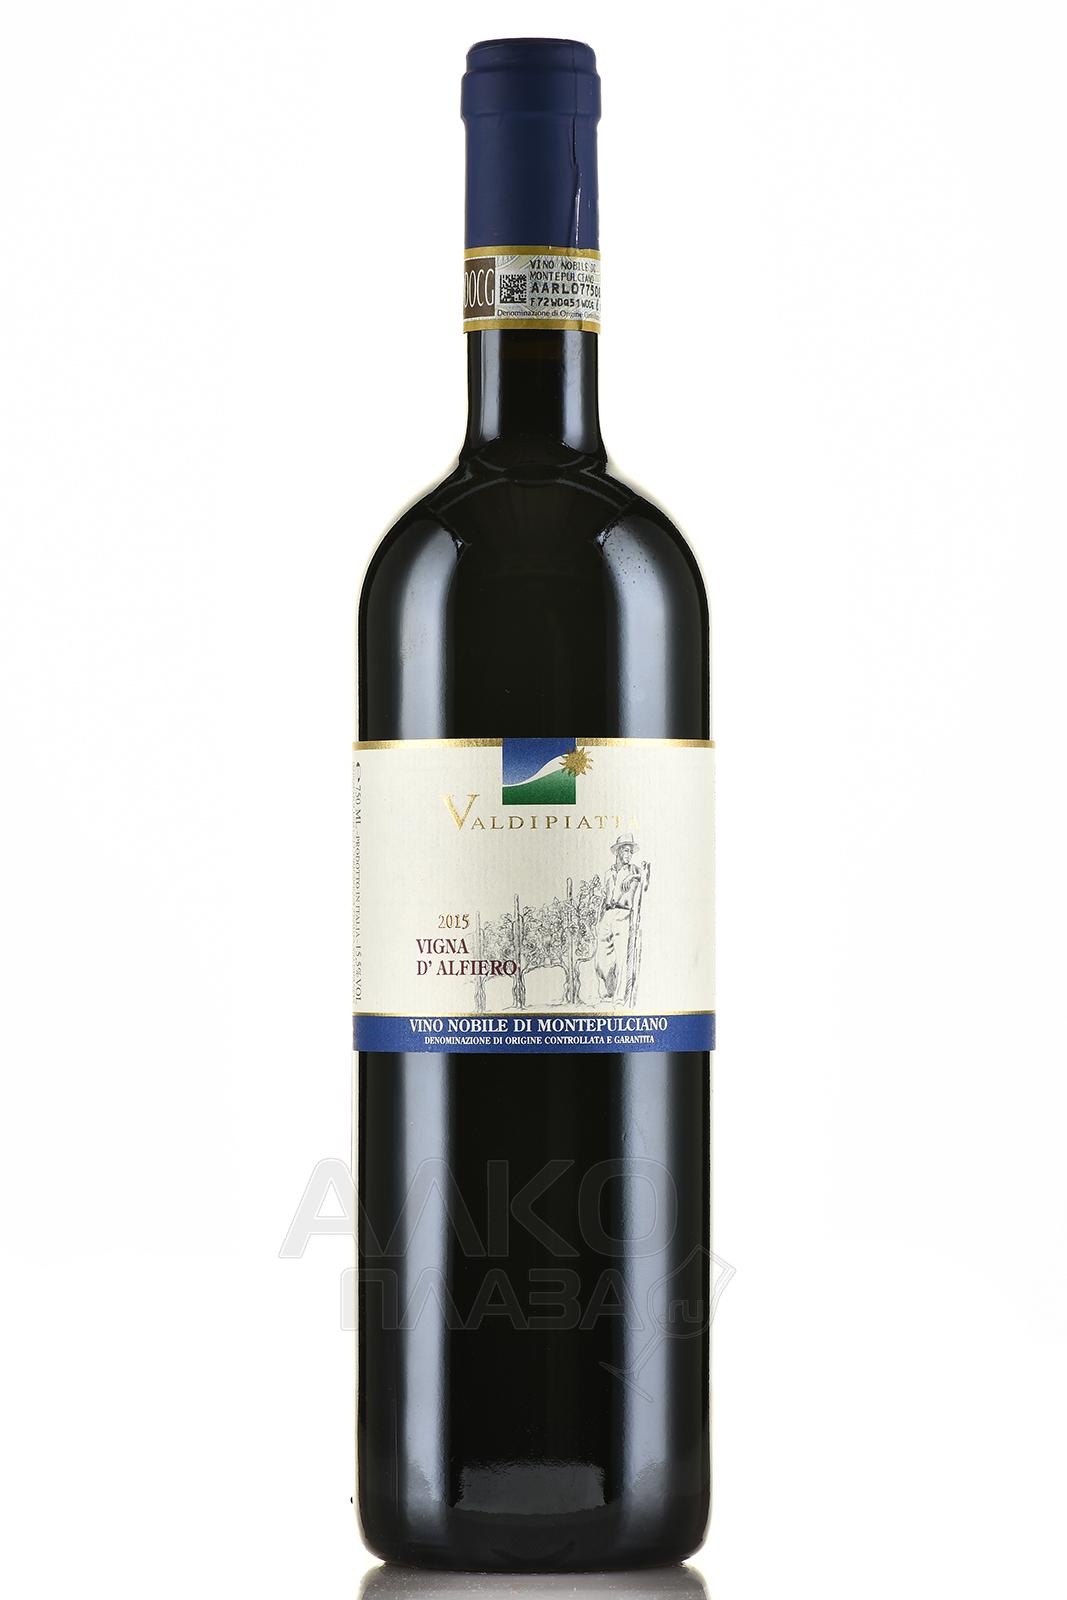 Valdipiatta Nobile di Montepulciano Vigna d’Alfiero - вино Вальдипьятта Нобиле ди Монтепульчано Винья д’Альфьеро 0.75 л красное сухое